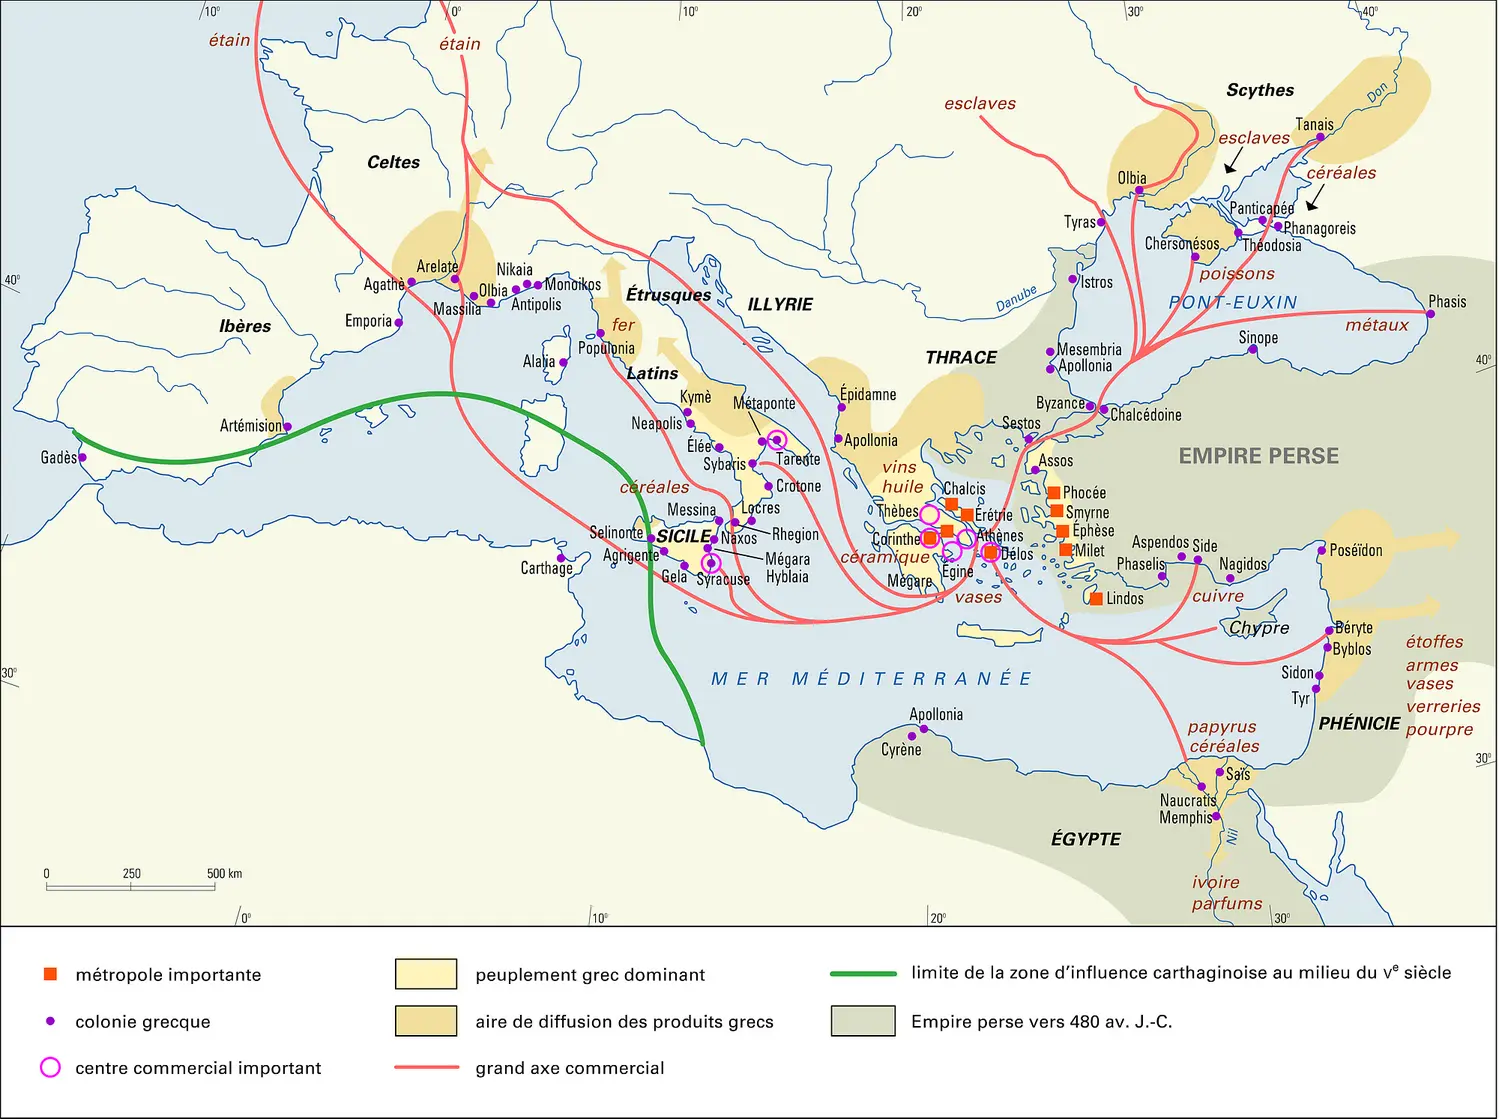 Grèce antique, expansion et commerce